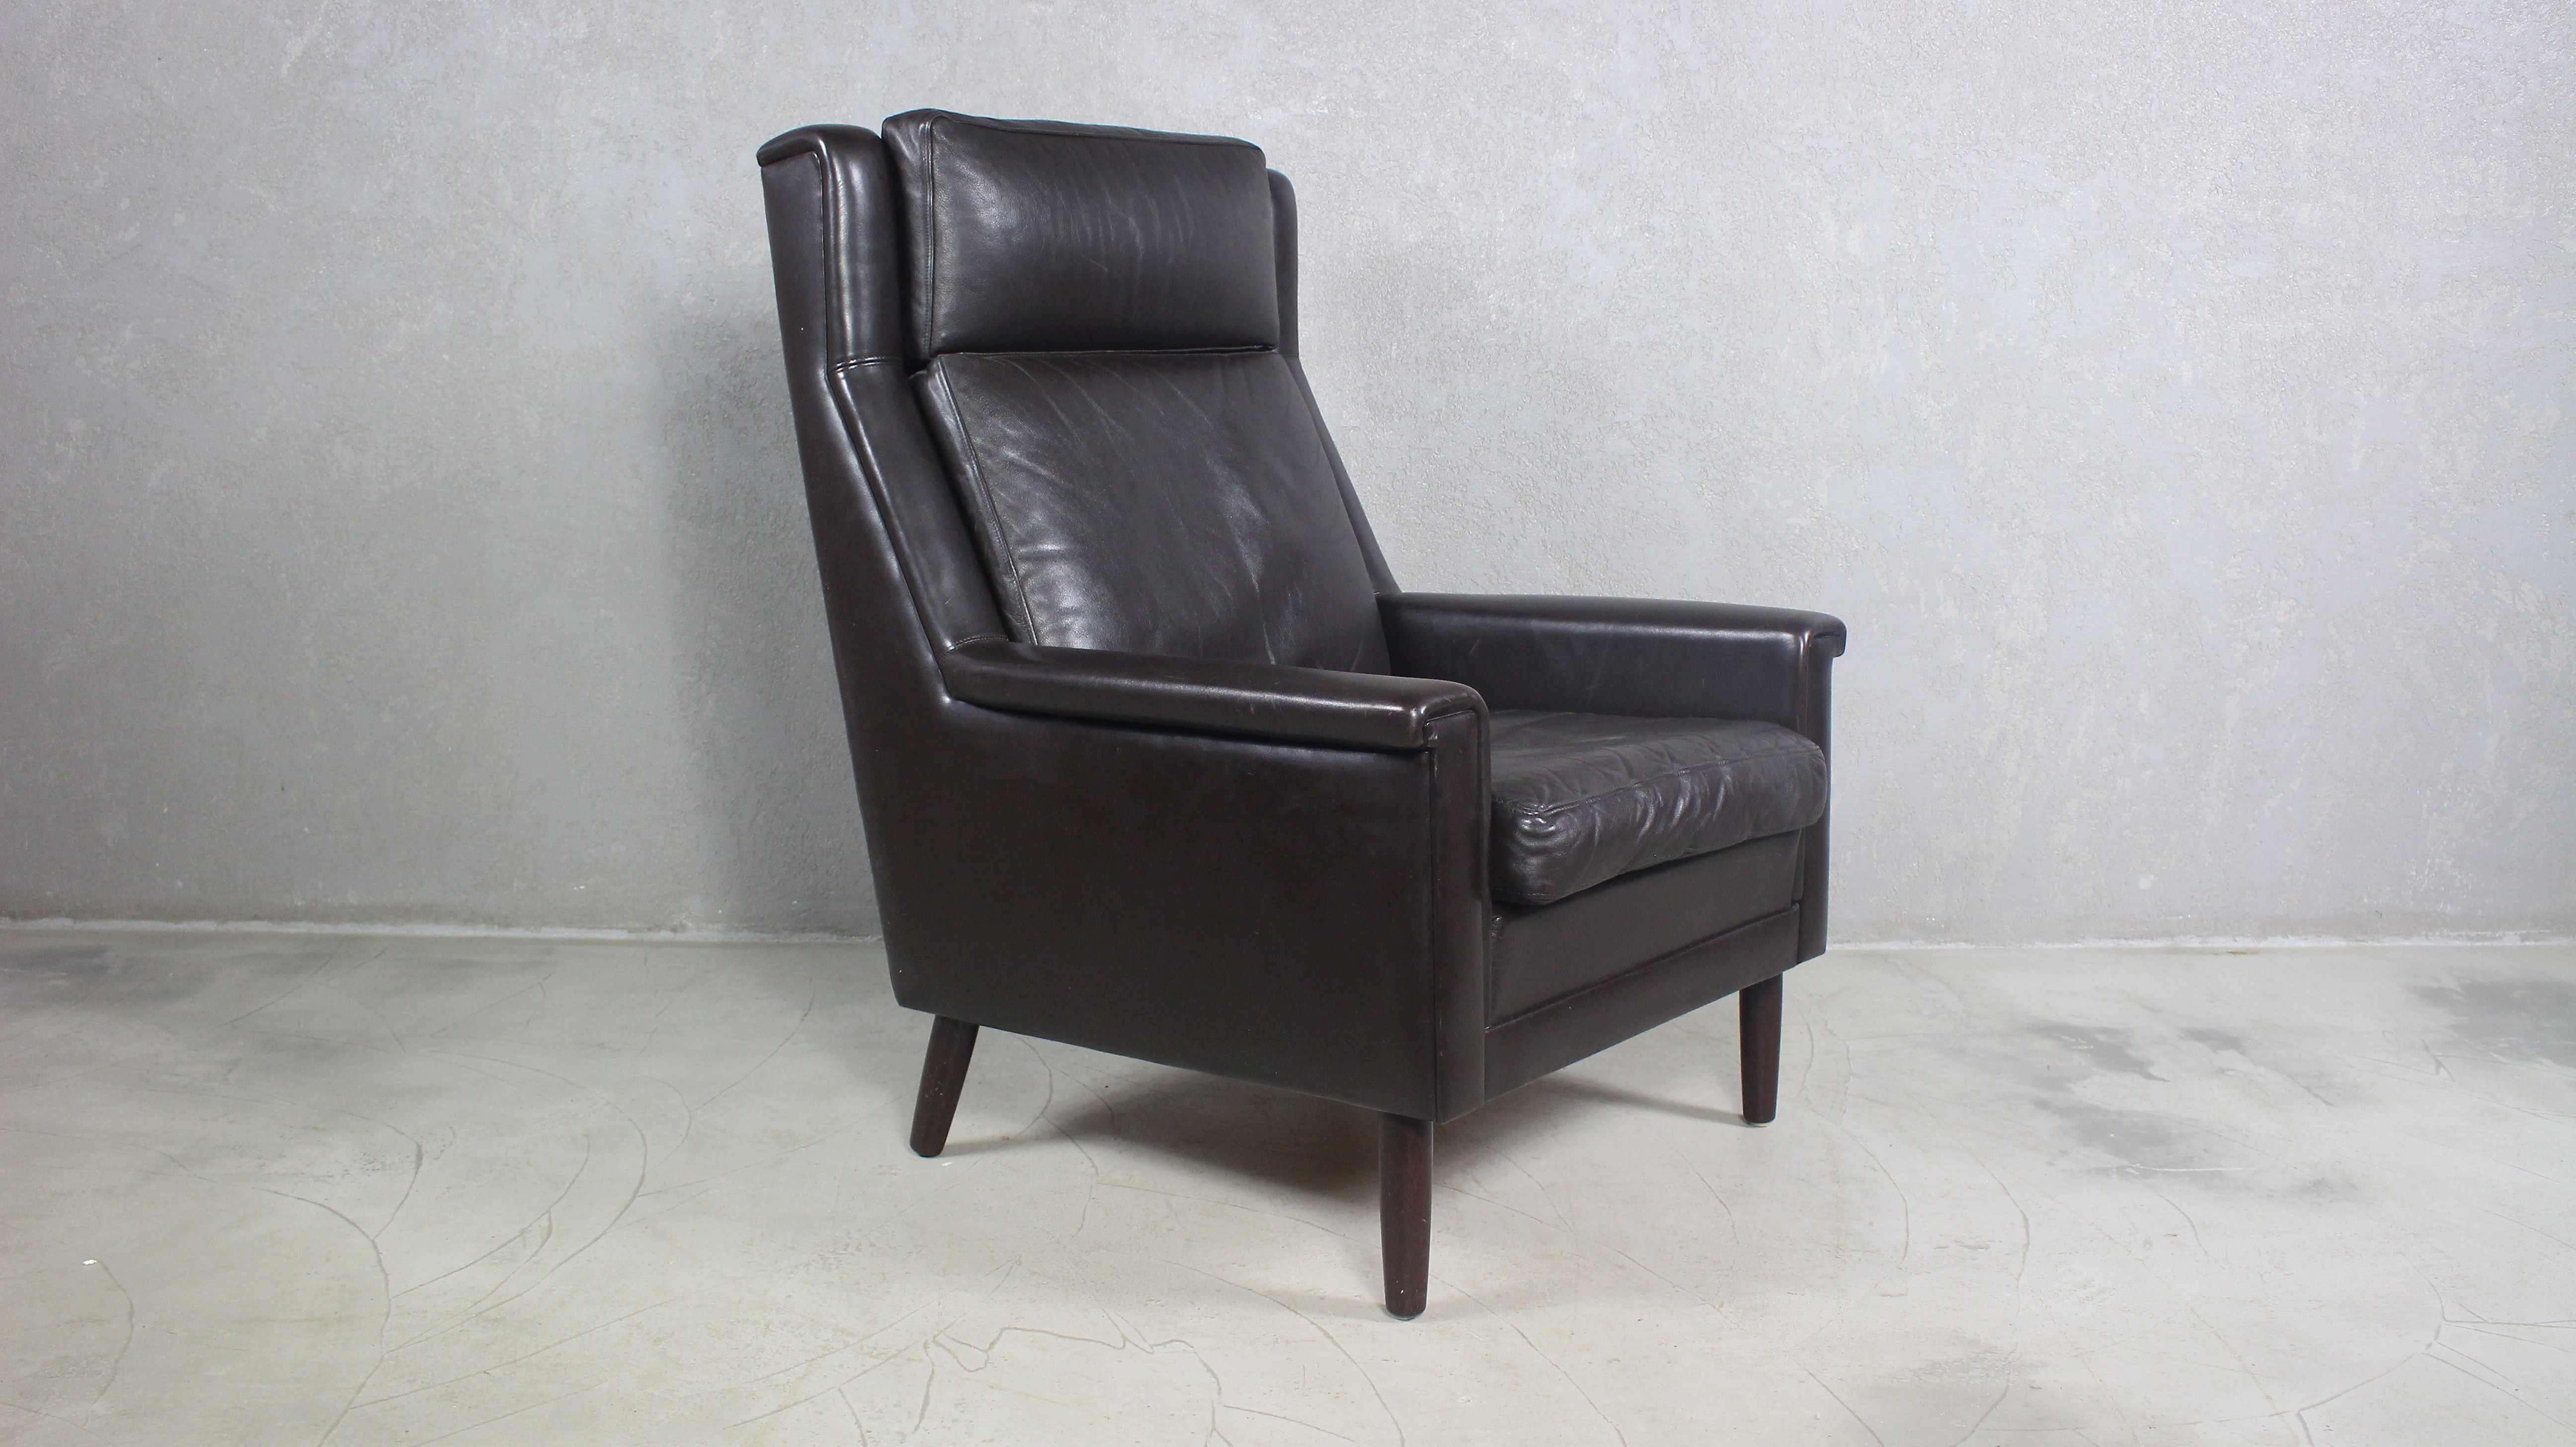 Chaise en cuir noir de Georg Thams.
Chaise longue danoise vintage des années 1960.
Produit au Danemark.
Il est composé de cuir noir et de pieds en bois.
Belle patine légère sur le cuir.